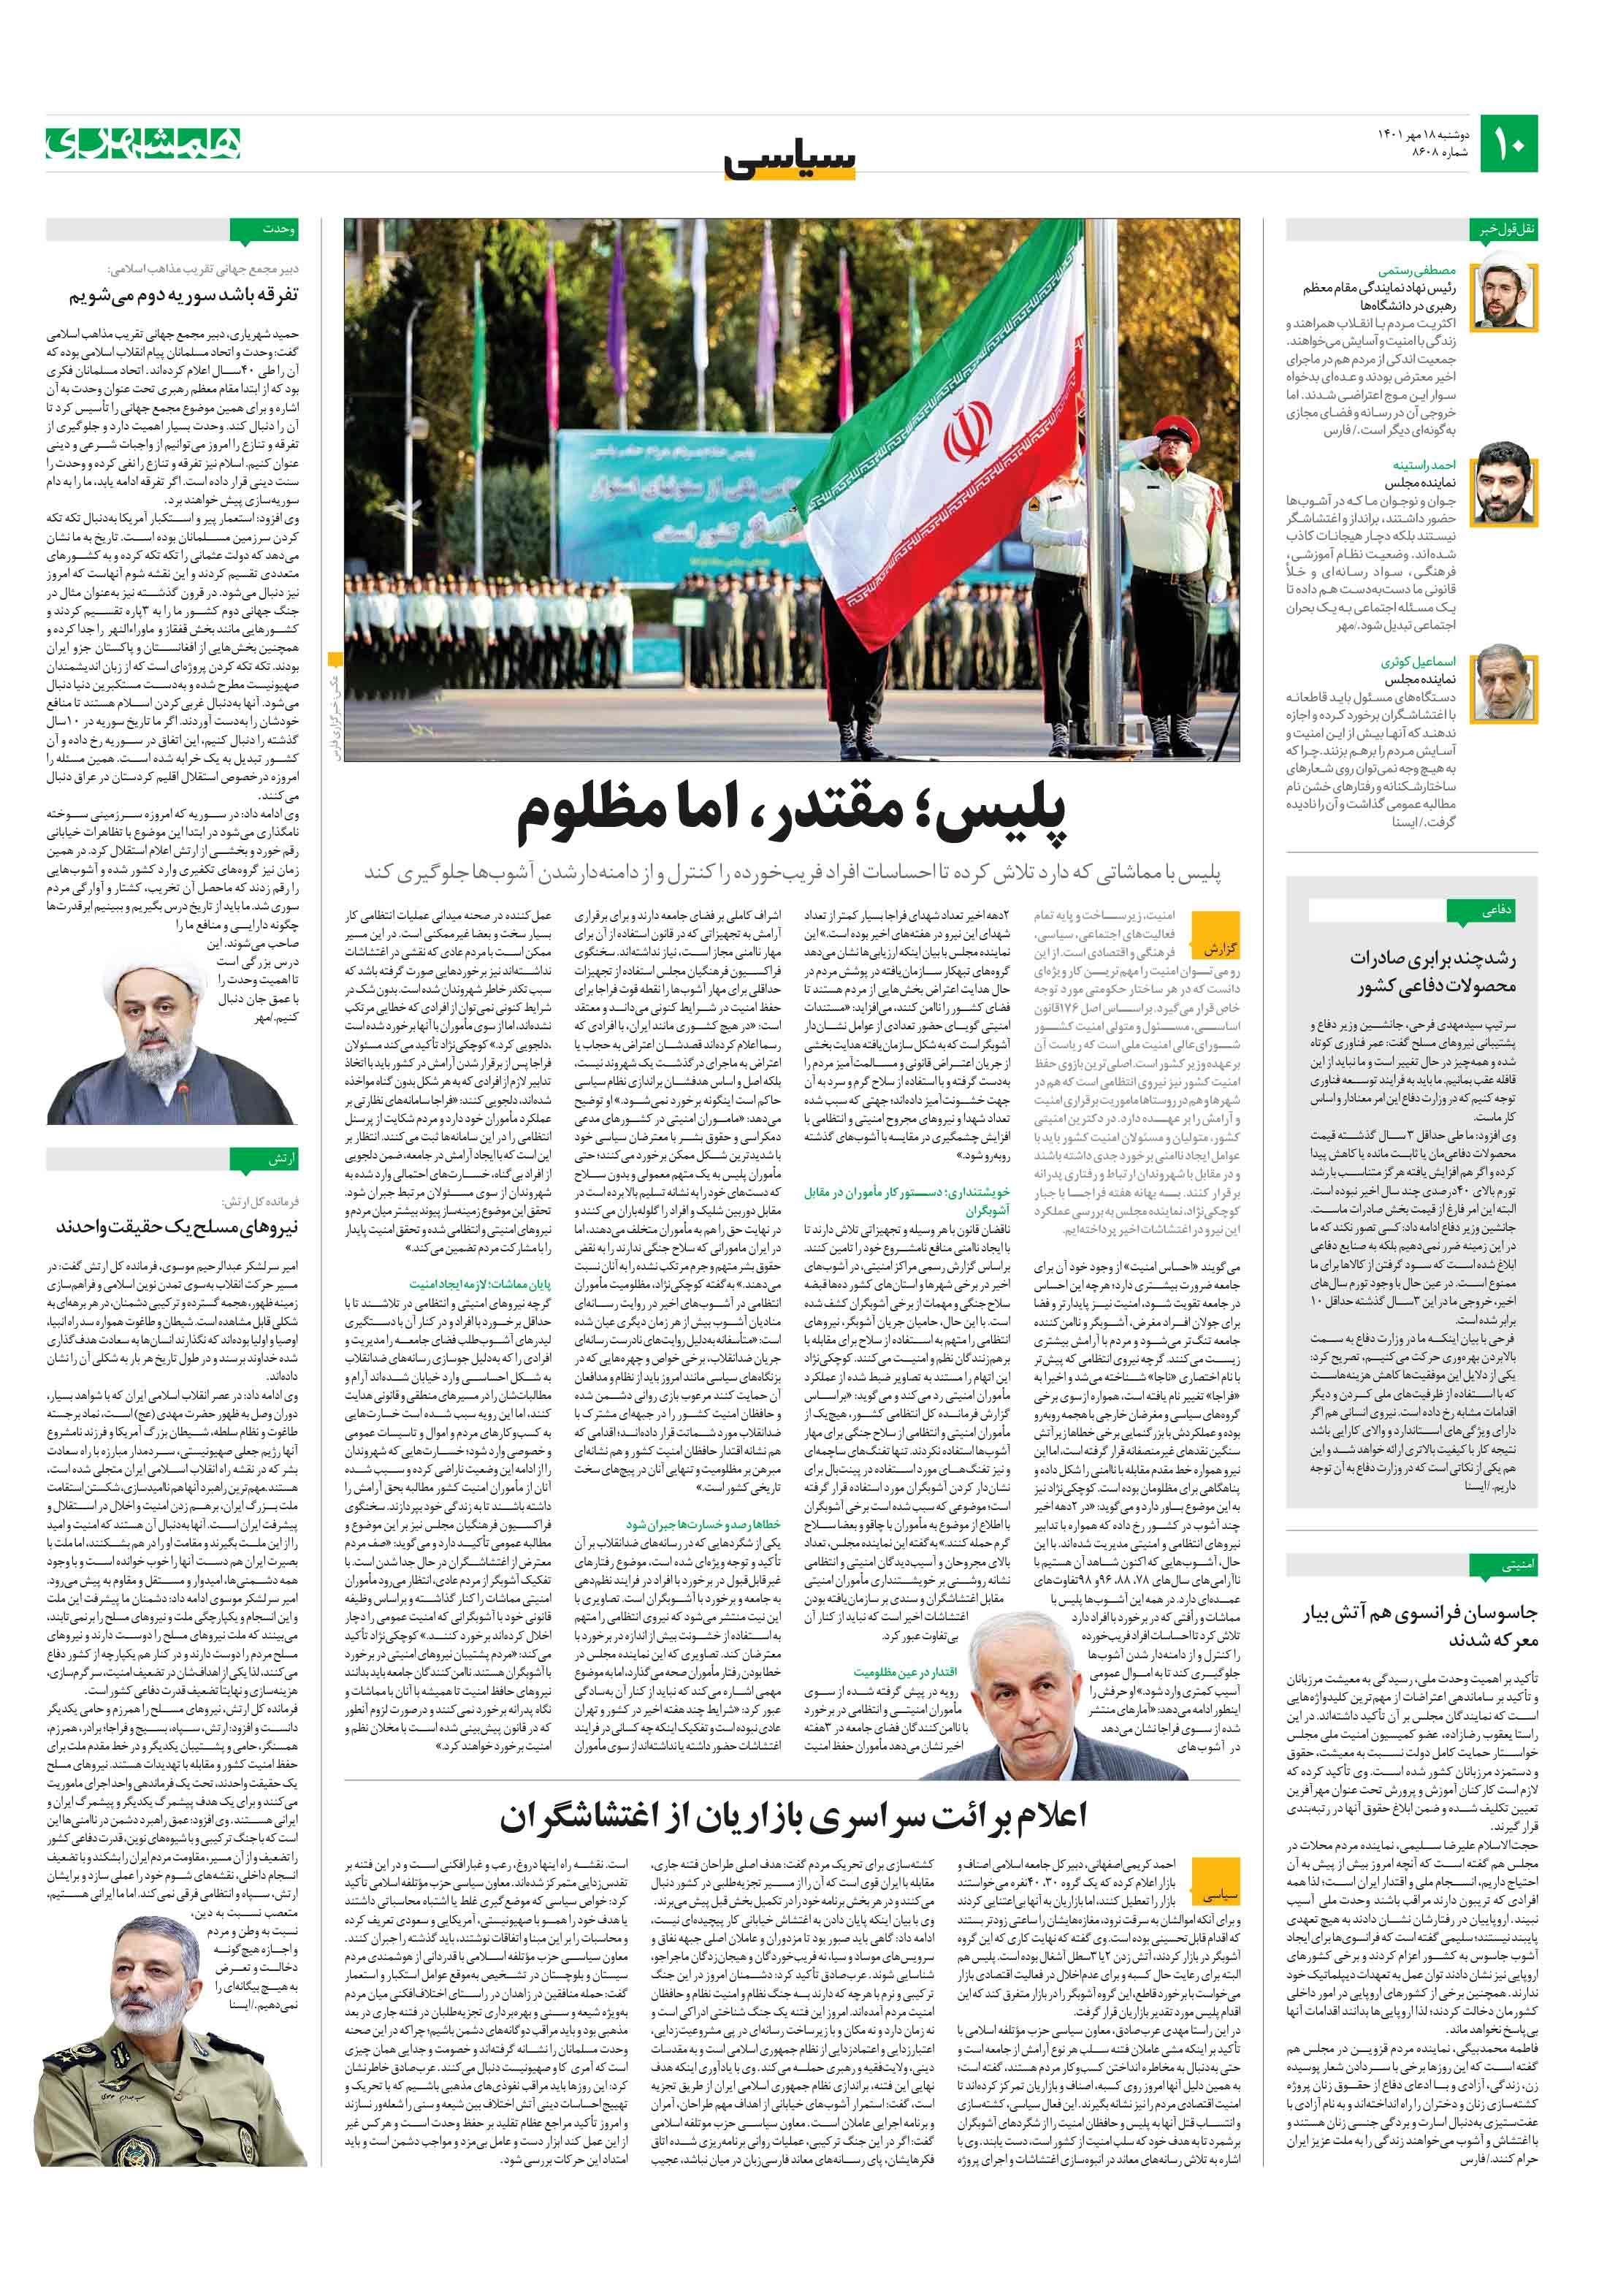 گزارش همشهری از اعتراضاتِ خبرساز در بازار تهران